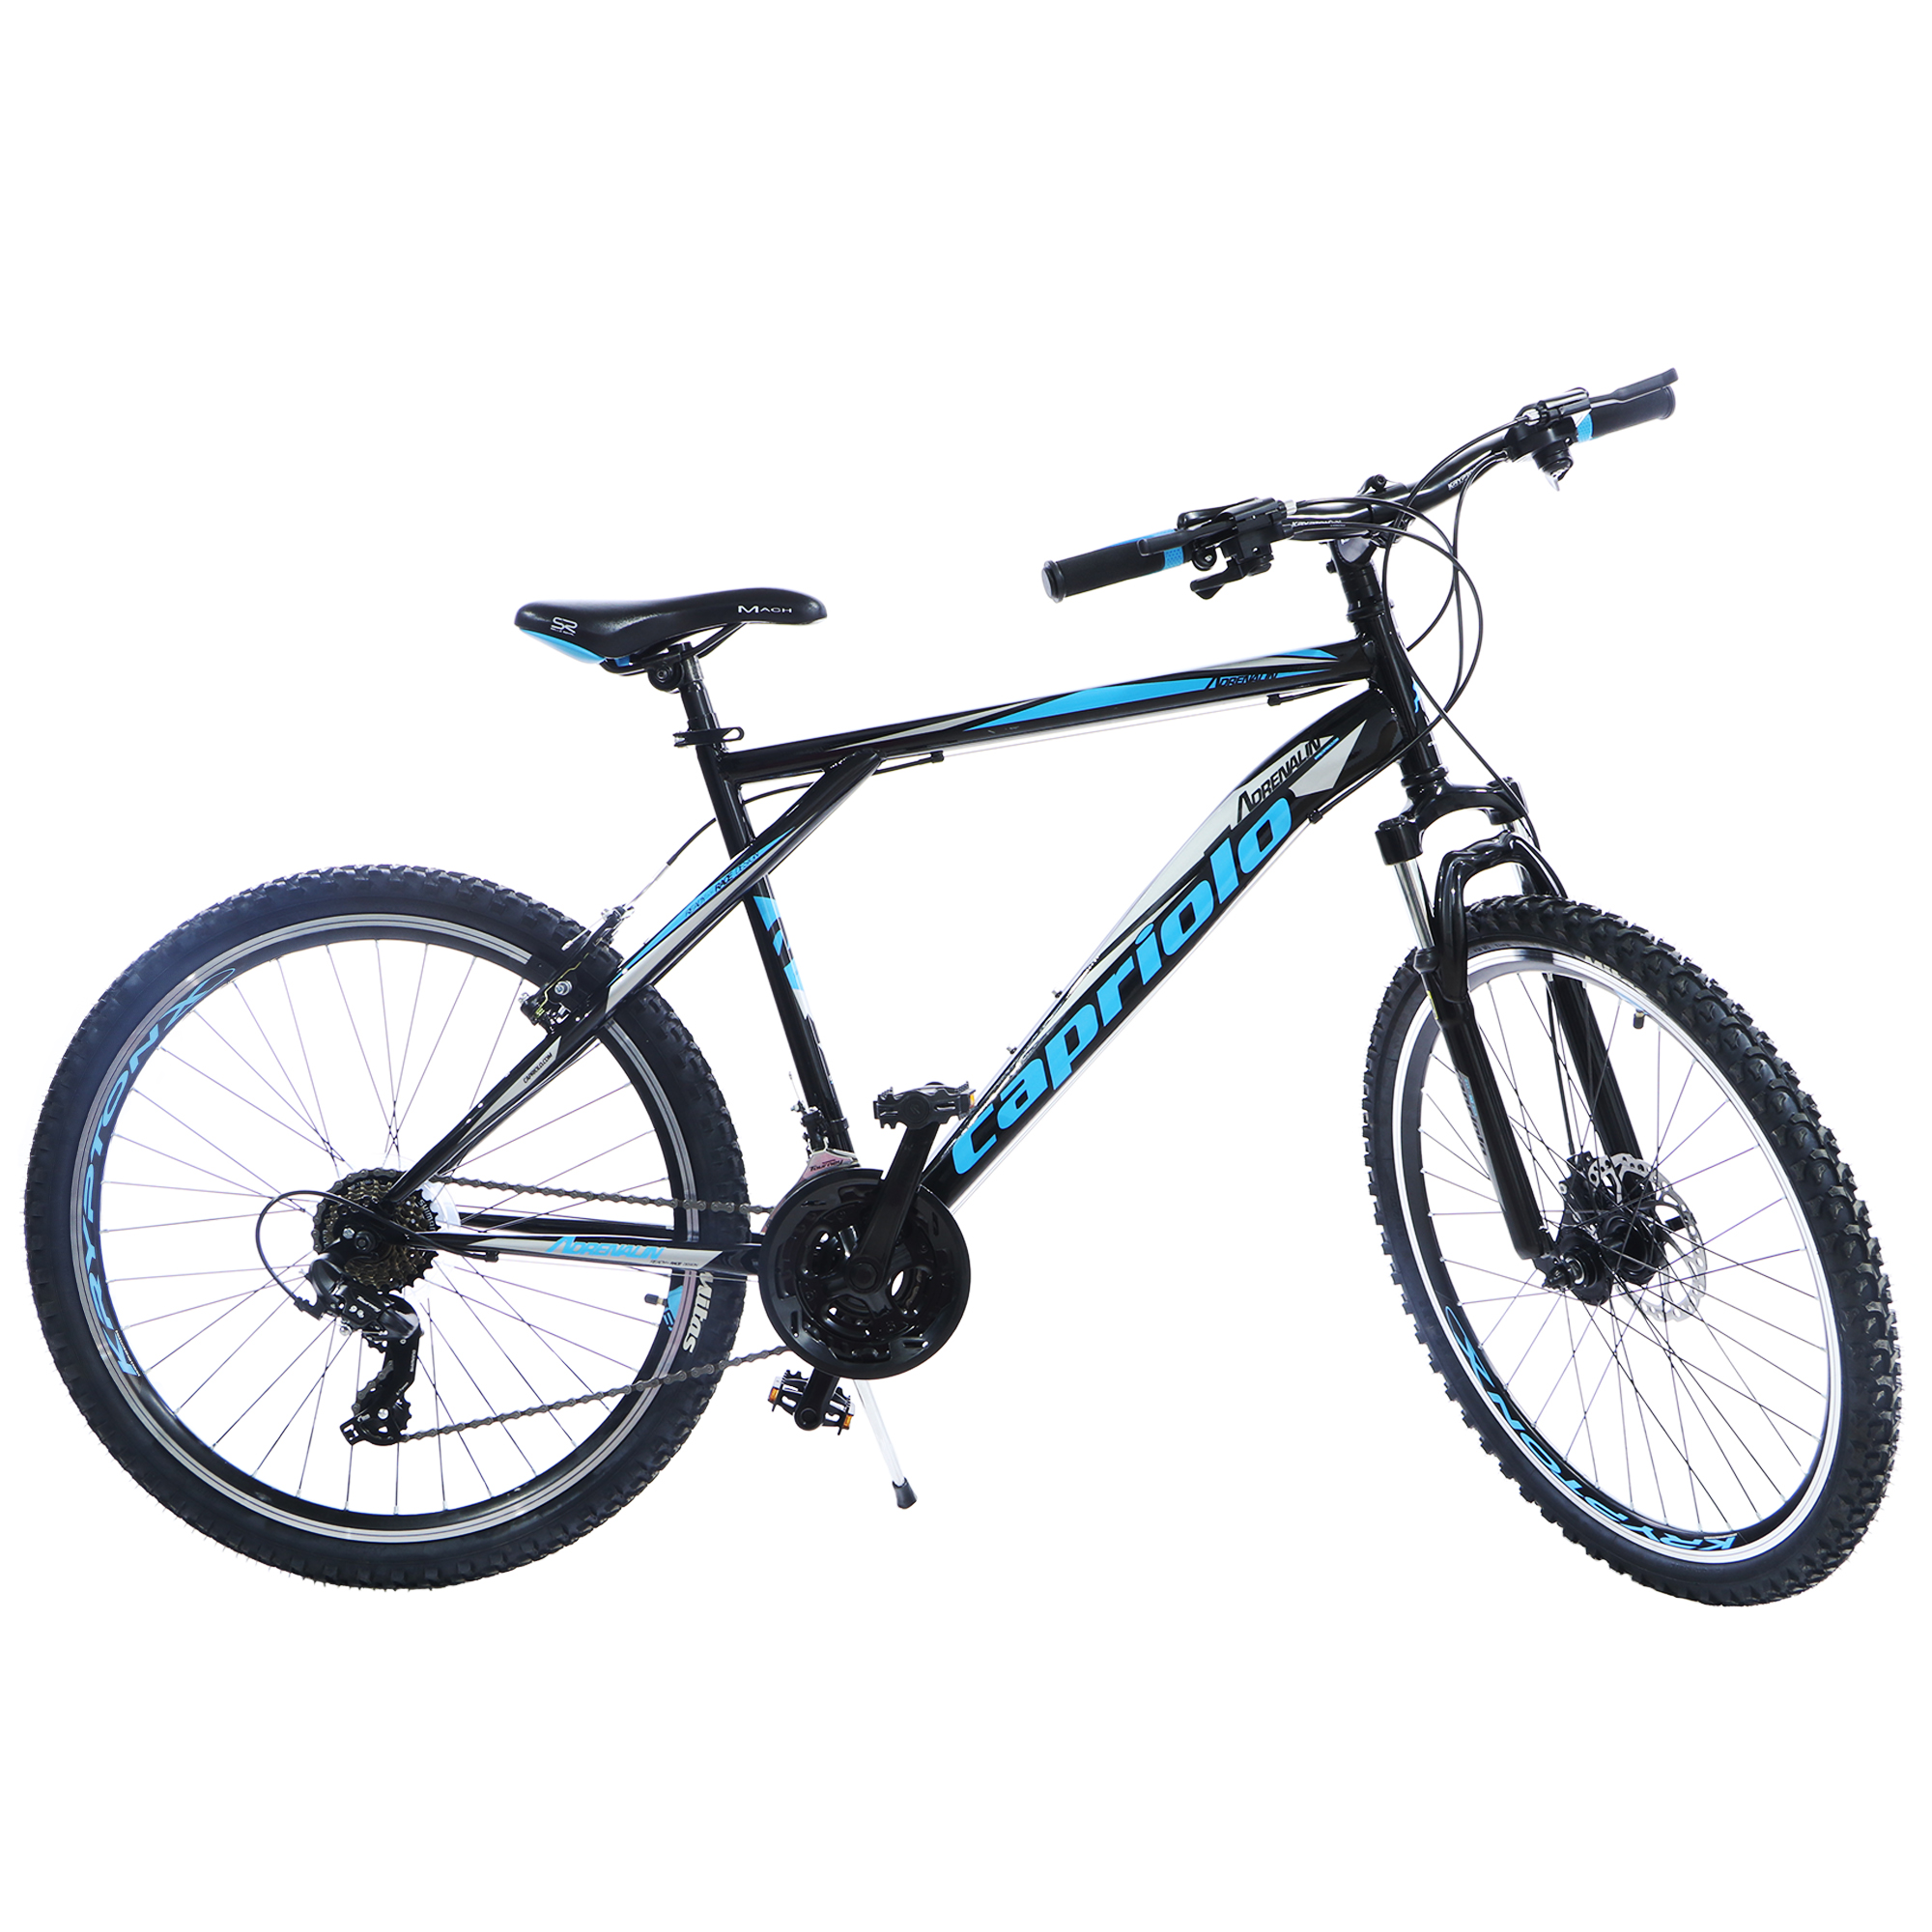 Велосипед Capriolo Mtb Adrenalin черный/синий 26 торм колод vx829c 3 153 диск полимер promax dsk720 700 320 10 clarks